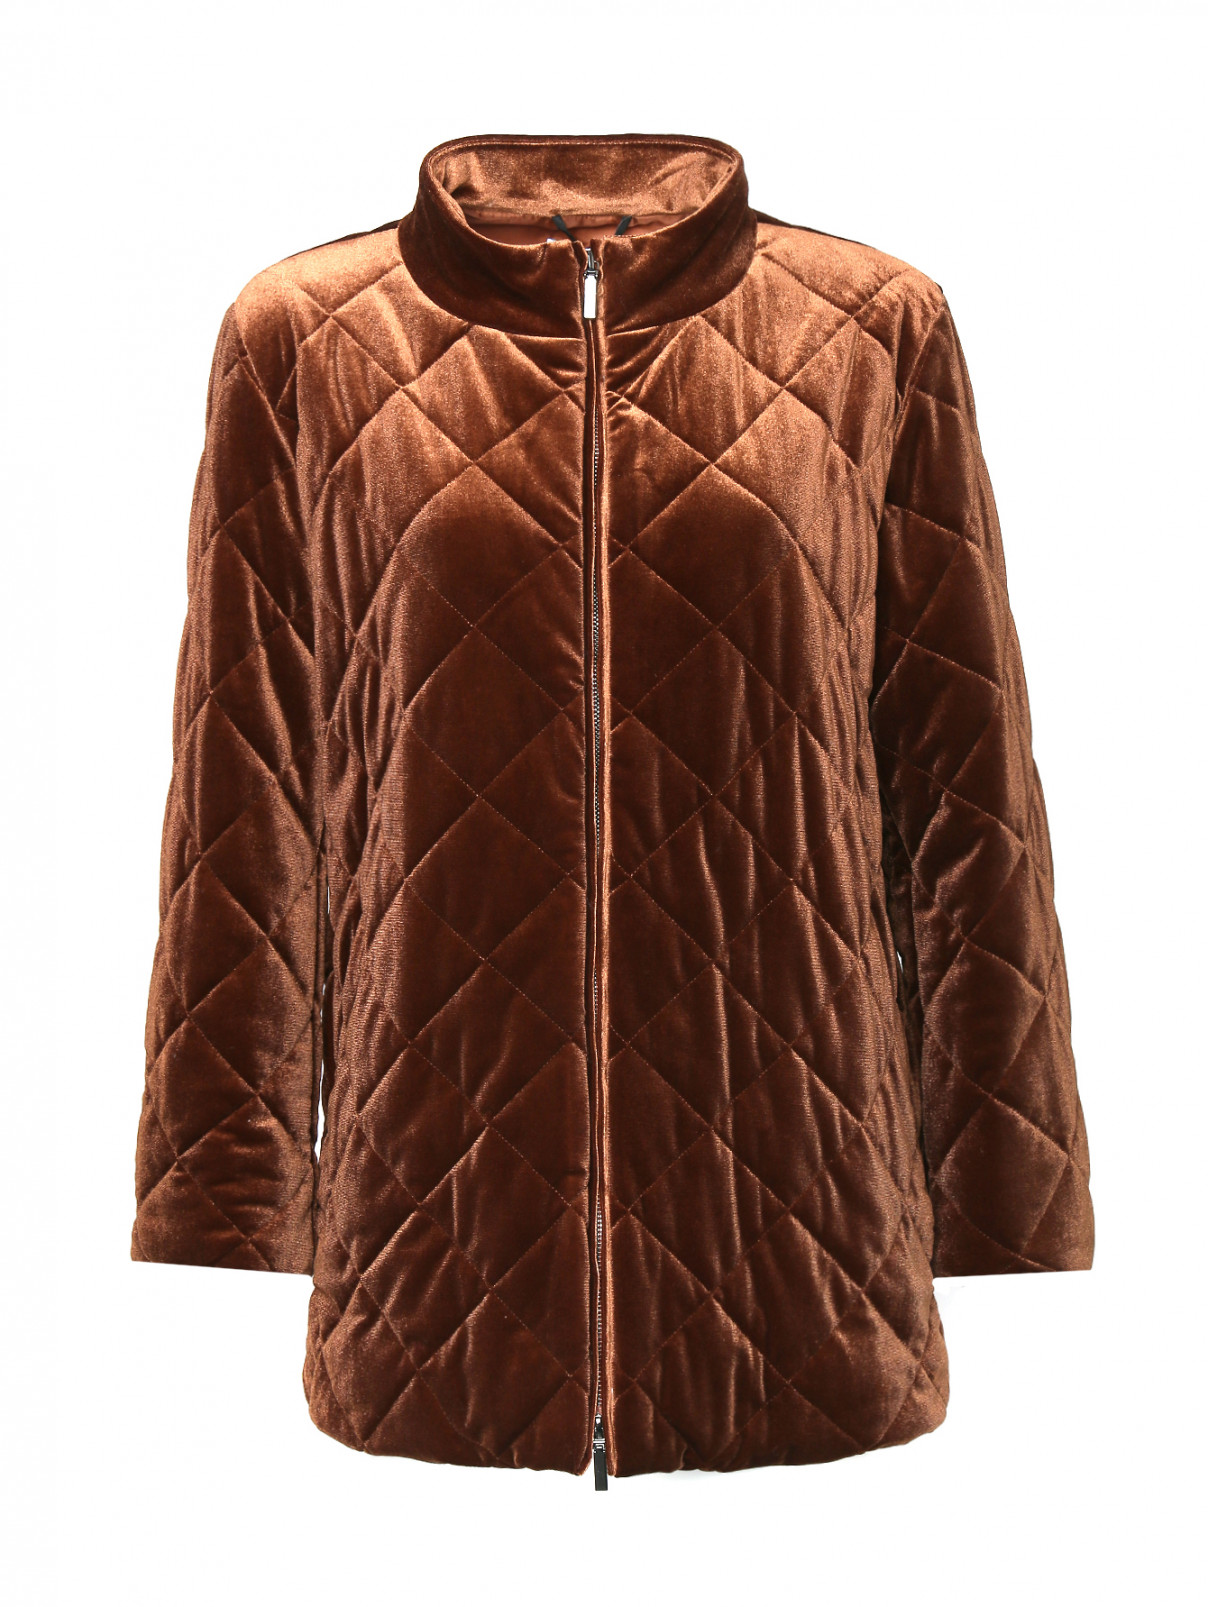 Стеганая куртка на молнии с карманами Marina Rinaldi  –  Общий вид  – Цвет:  Коричневый